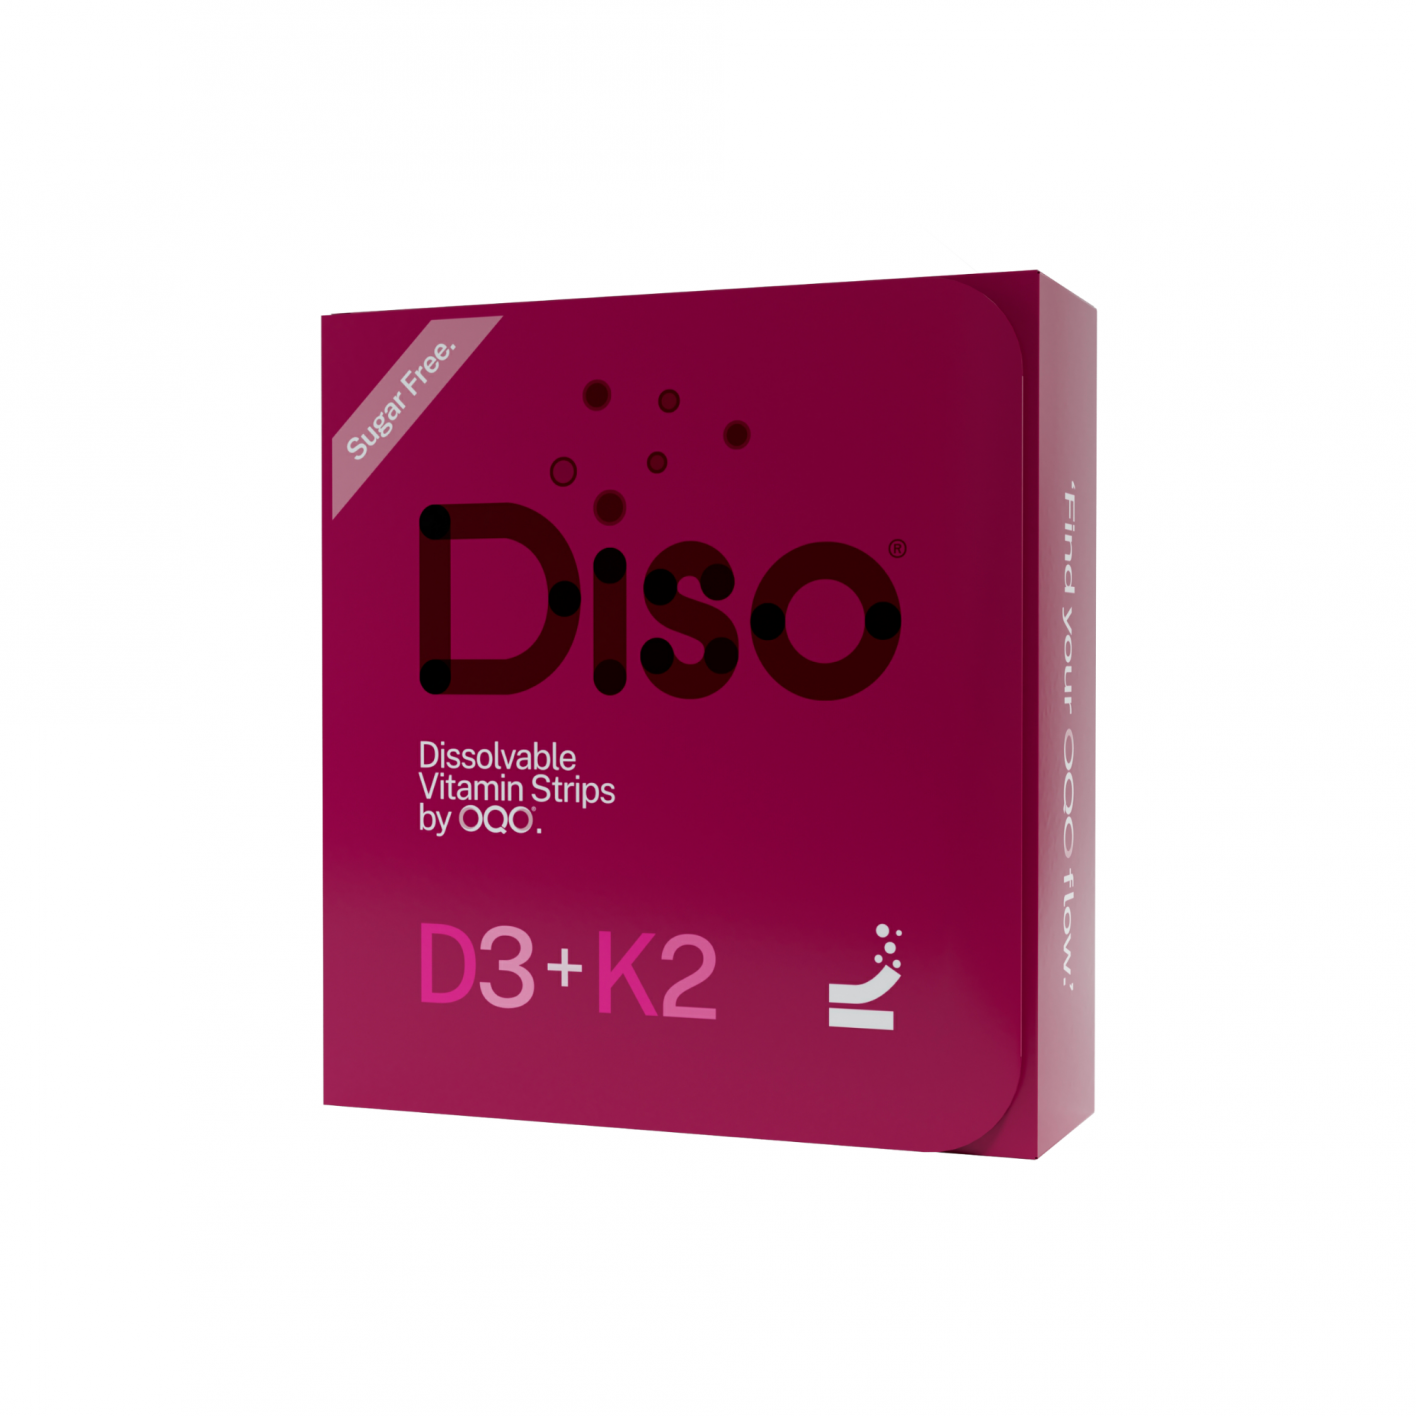 Diso D3+K2 Dissolvable Vitamin Strips 30's